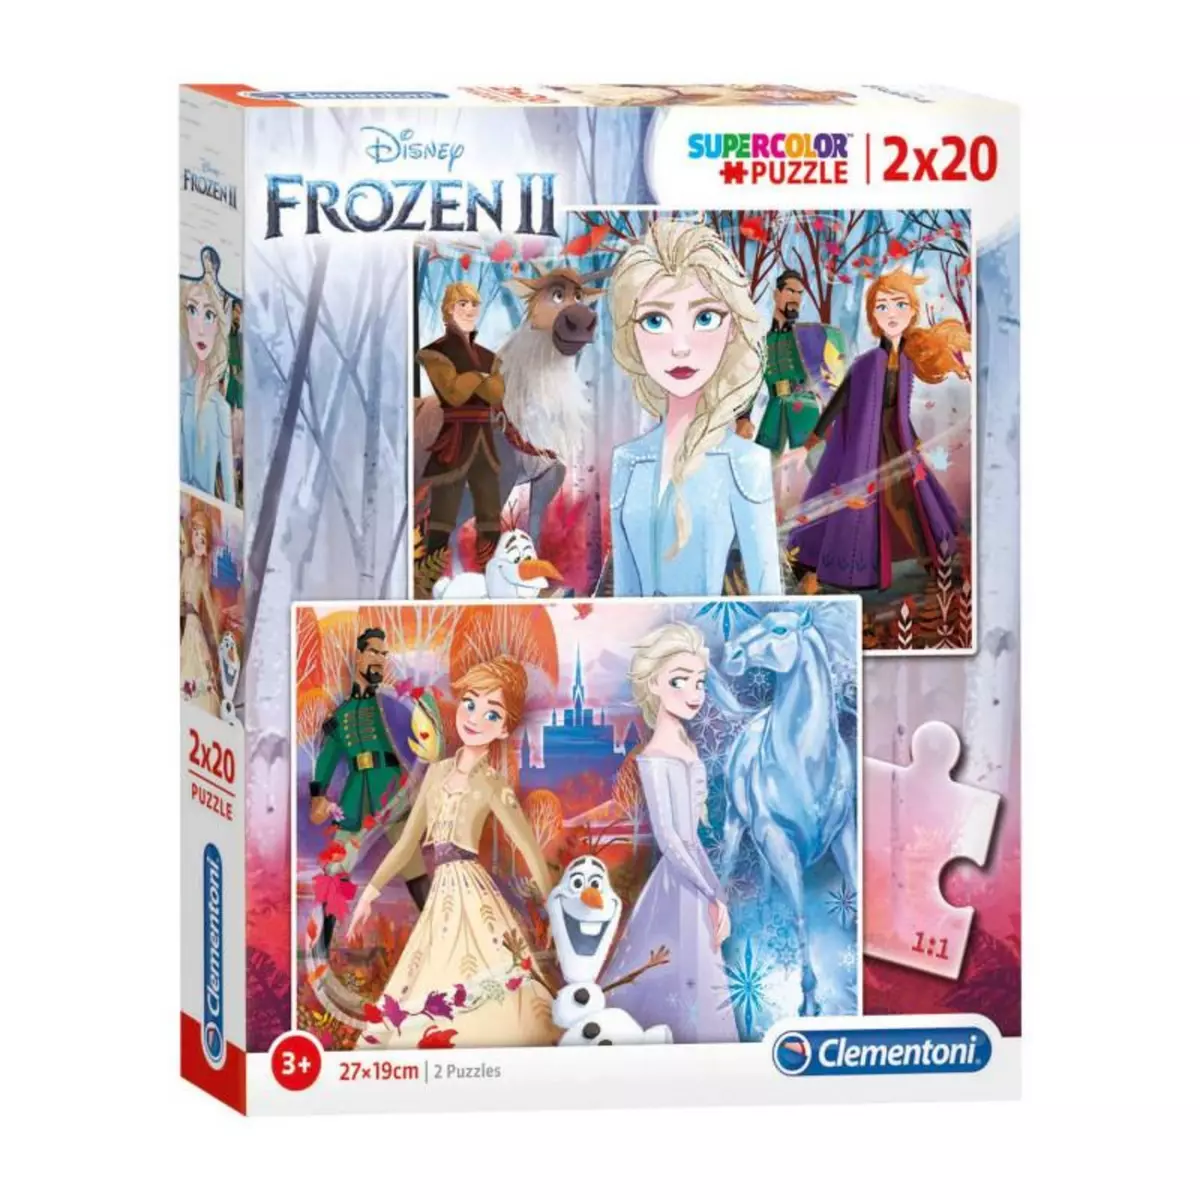 CLEMENTONI Clementoni Puzzle Disney Frozen 2, 2x20 pcs.